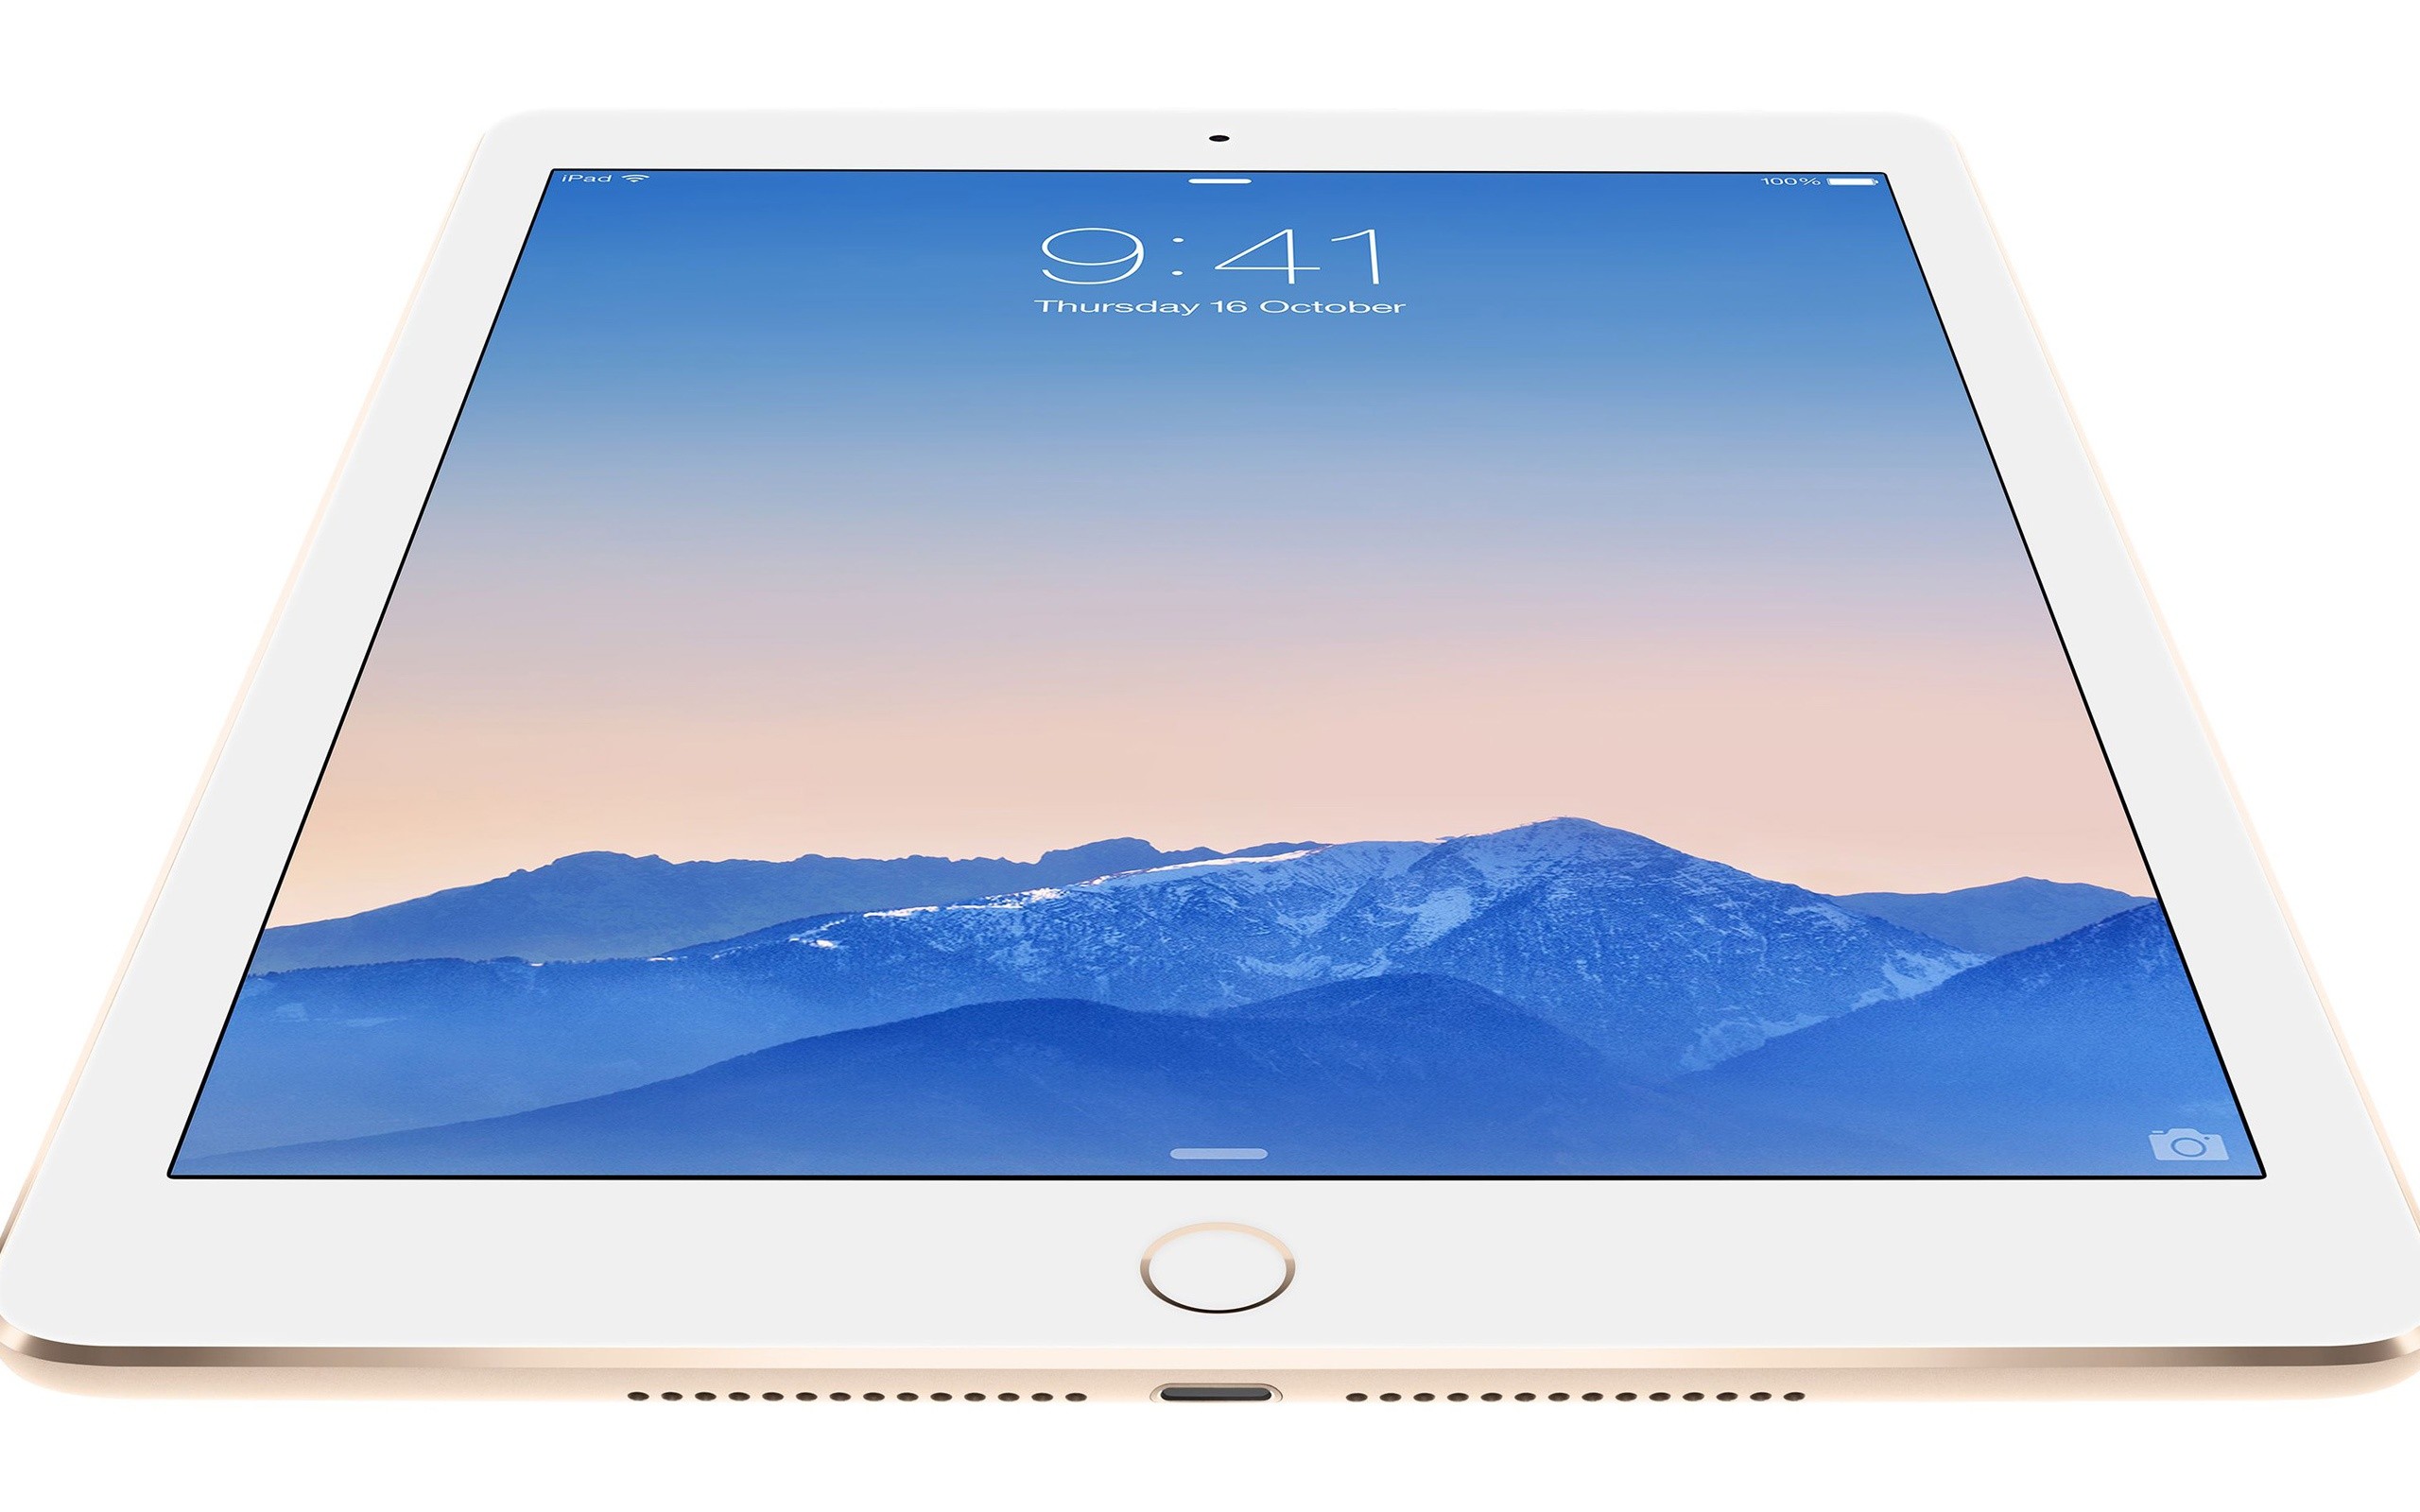 2560x1600 Apple iPad Air 2 HD Wallpaper - iHD Wallpapers